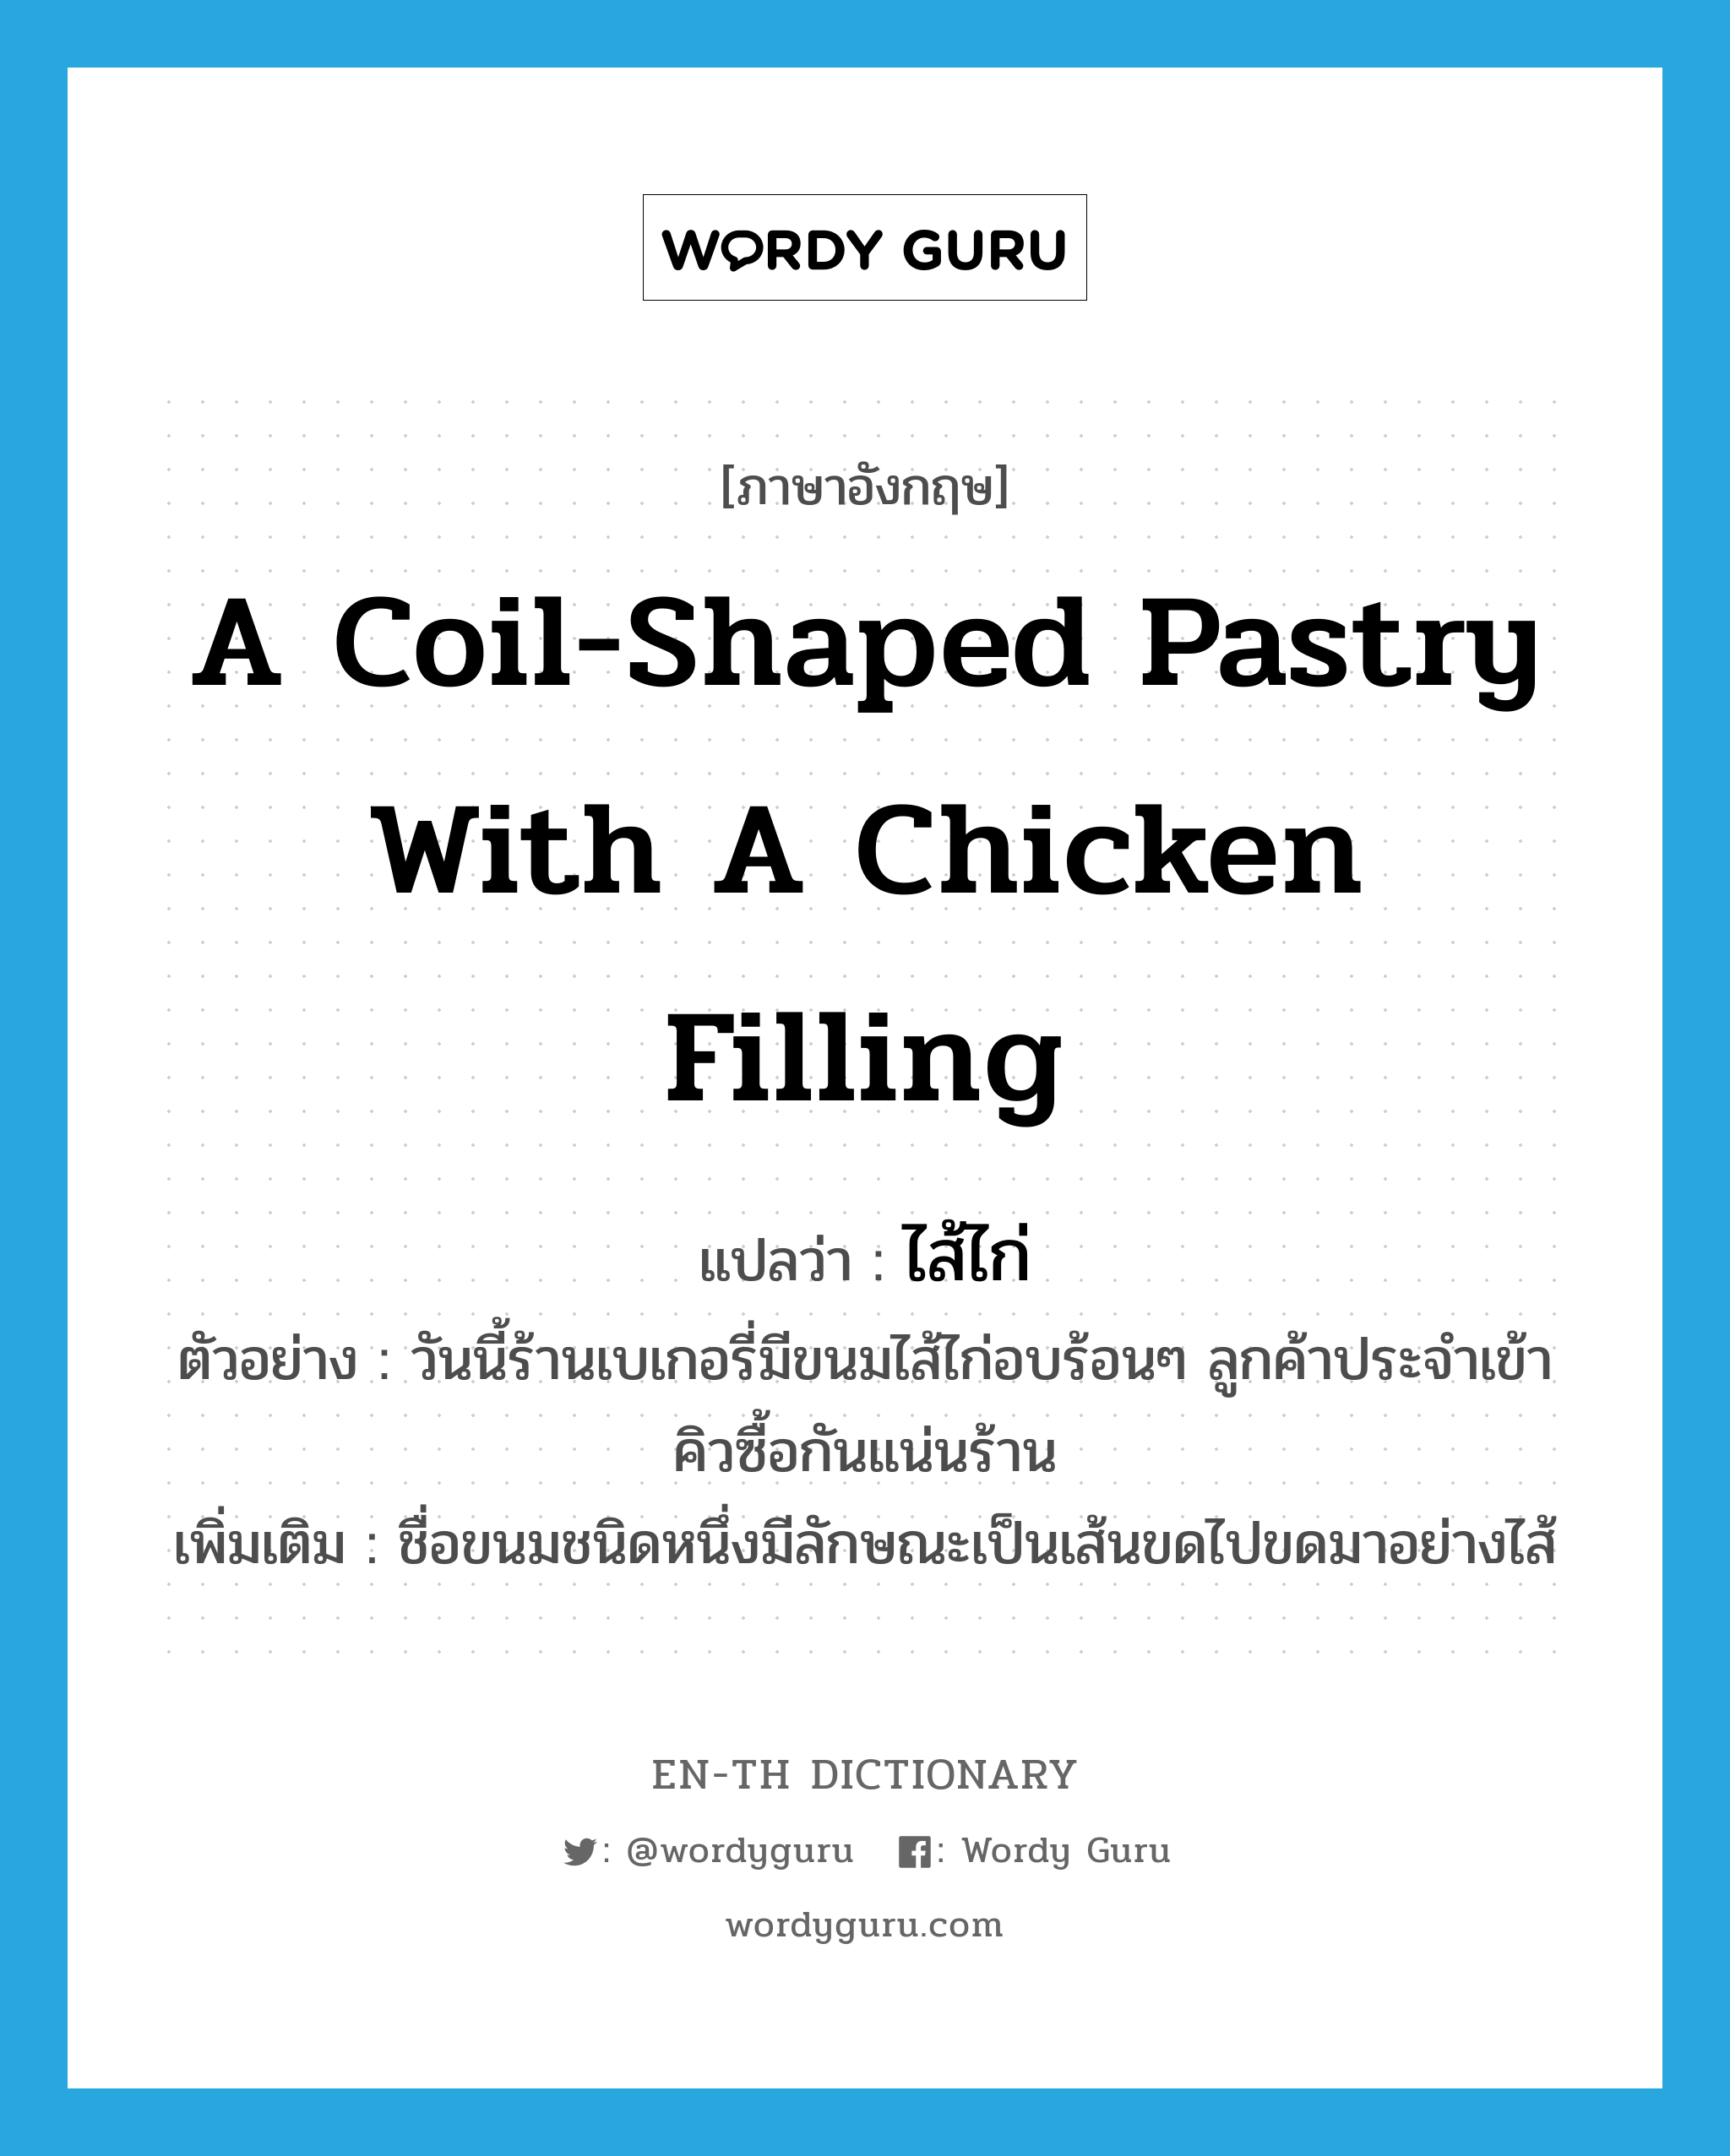 a coil-shaped pastry with a chicken filling แปลว่า? คำศัพท์ในกลุ่มประเภท N, คำศัพท์ภาษาอังกฤษ a coil-shaped pastry with a chicken filling แปลว่า ไส้ไก่ ประเภท N ตัวอย่าง วันนี้ร้านเบเกอรี่มีขนมไส้ไก่อบร้อนๆ ลูกค้าประจำเข้าคิวซื้อกันแน่นร้าน เพิ่มเติม ชื่อขนมชนิดหนึ่งมีลักษณะเป็นเส้นขดไปขดมาอย่างไส้ หมวด N